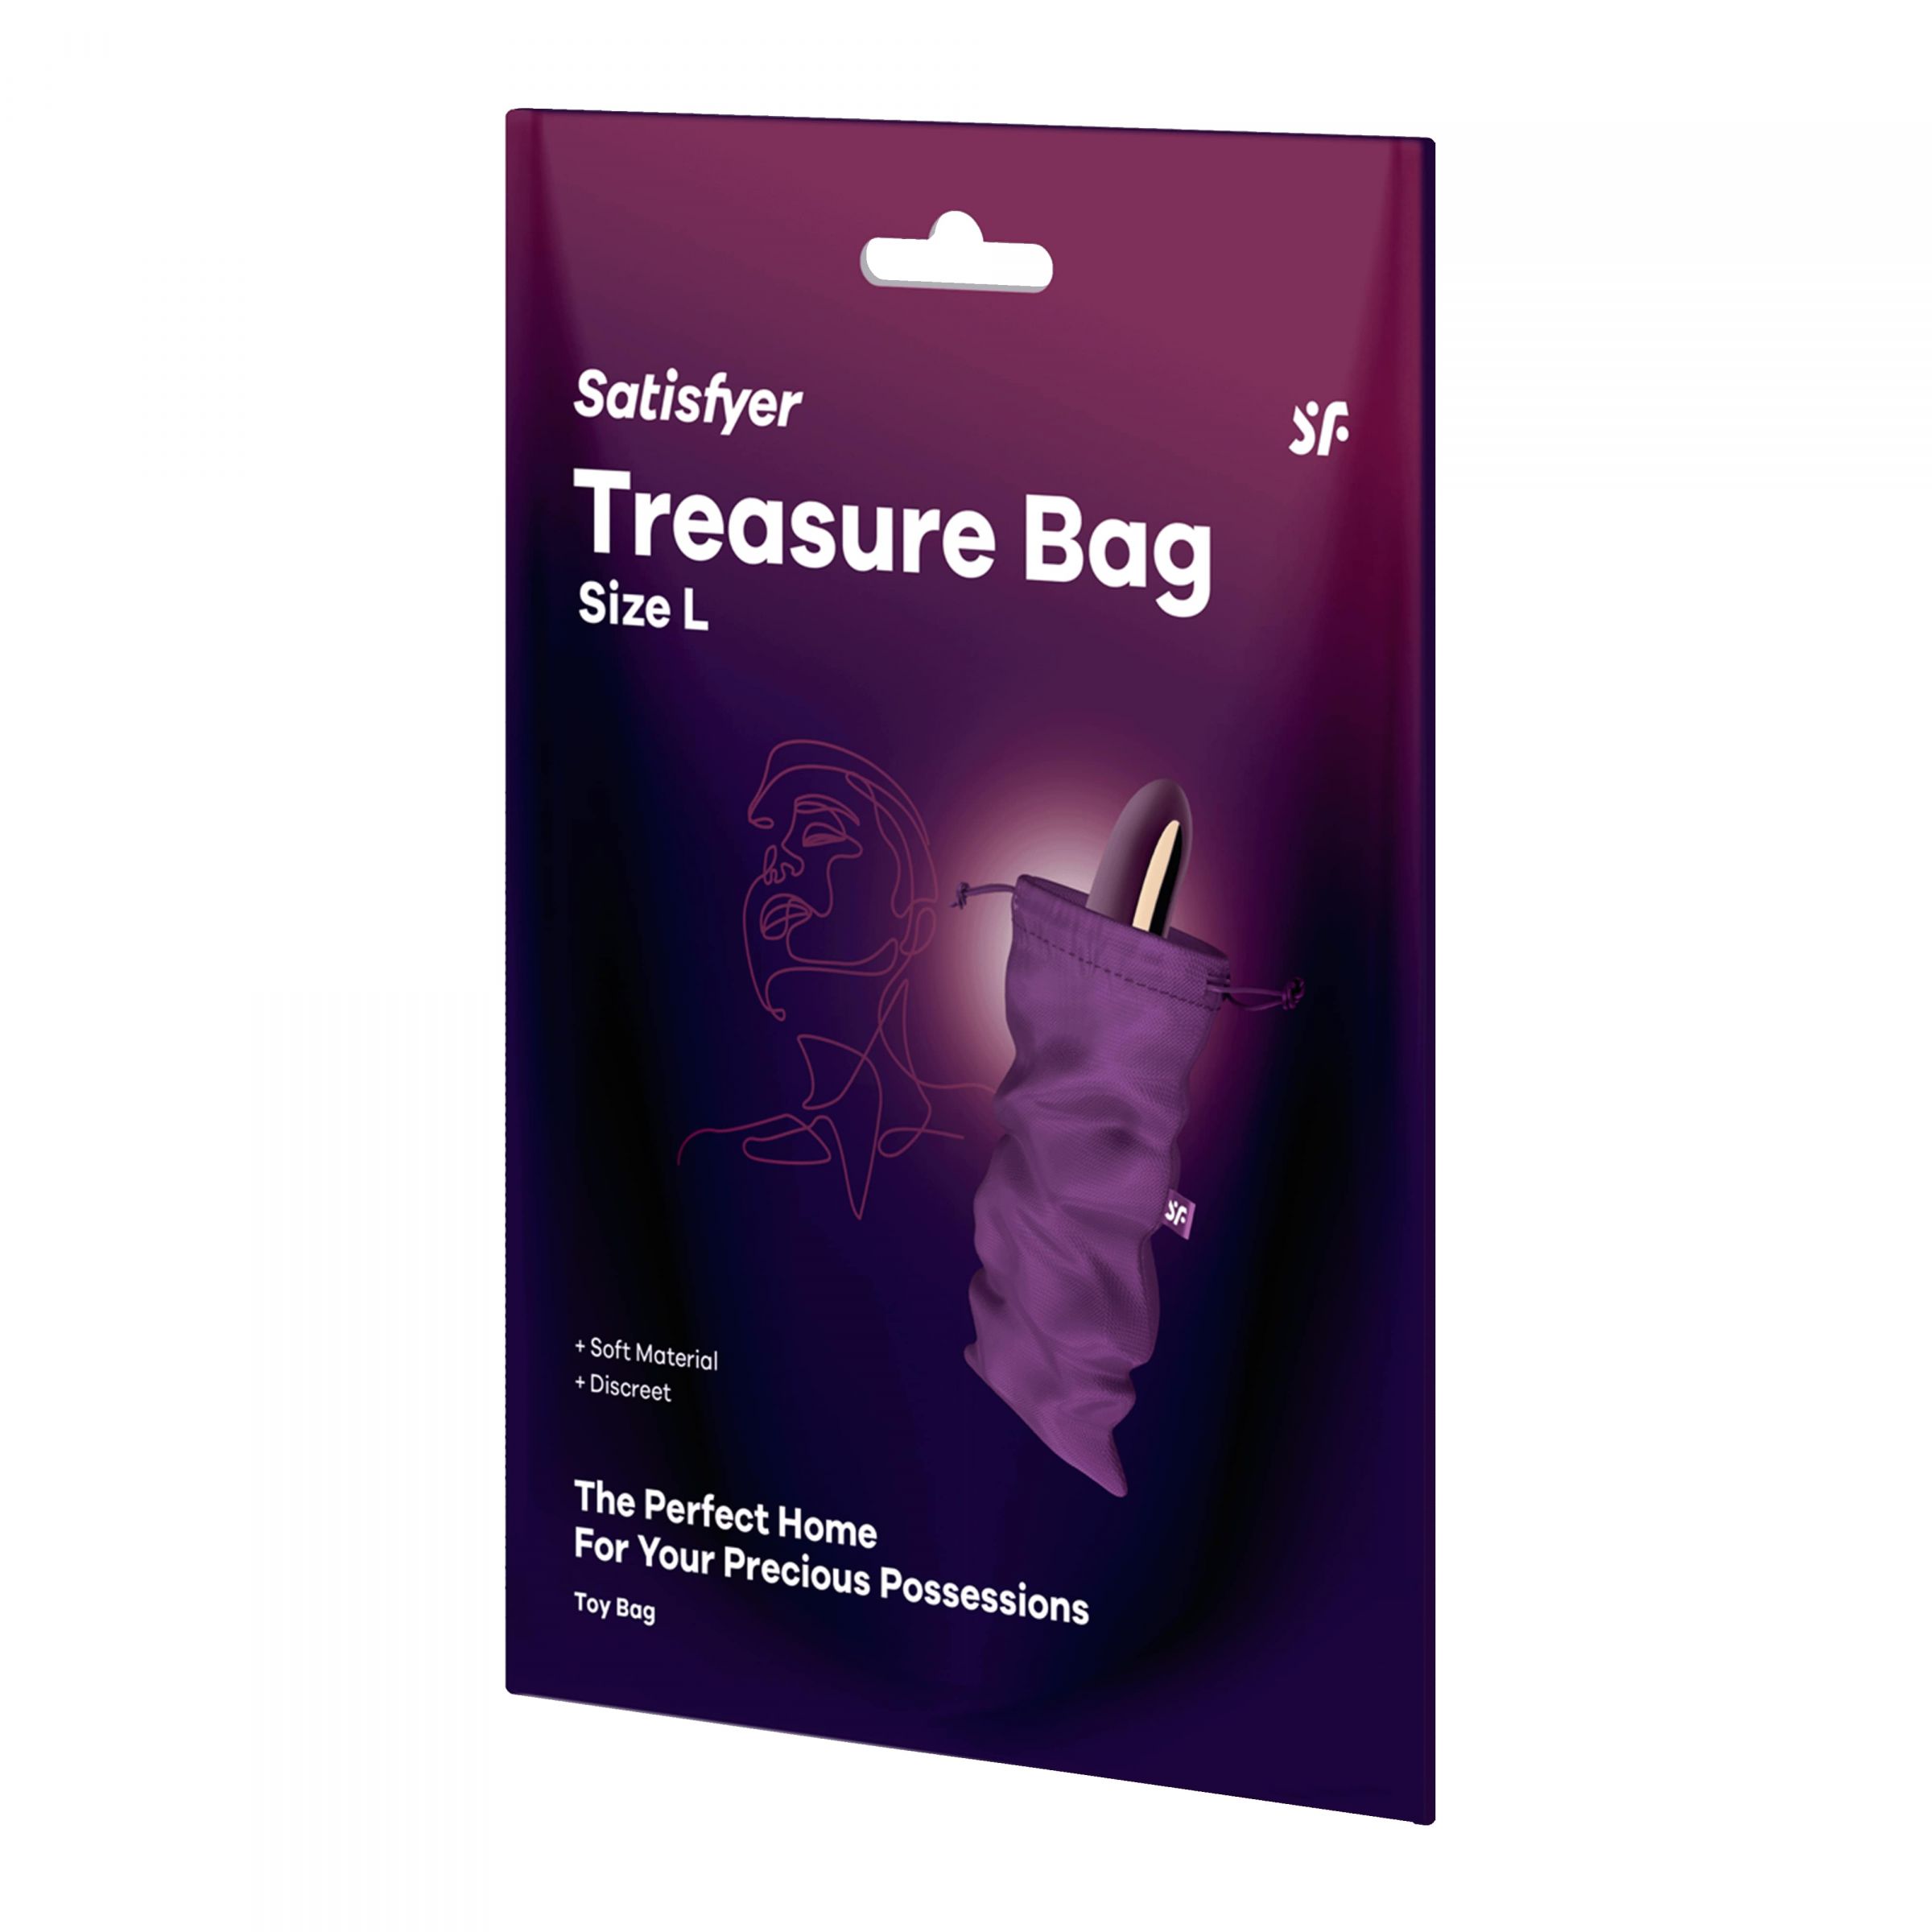 Satisfyer Treasure Bag – специализированный мешочек для хранения девайсов. Данный мешочек сделан из прочного материала, который долго и качественно прослужит вложенным в него изделиям. Материал: нейлон, полиэстер, полипропилен. Размеры - 26х15 см.